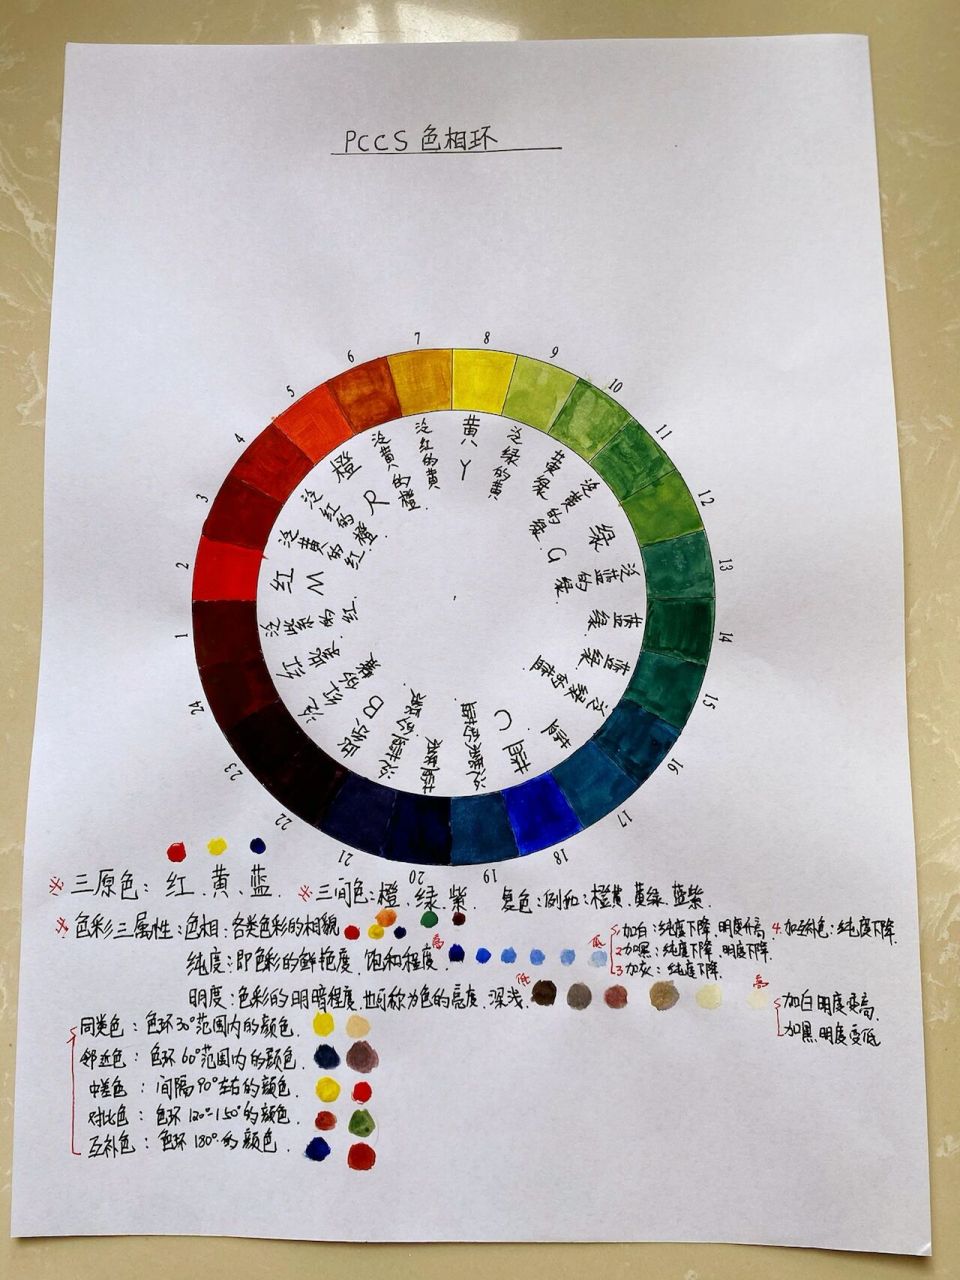 色彩基础24色相环来啦 用了一些时间画了关于色彩的基础知识